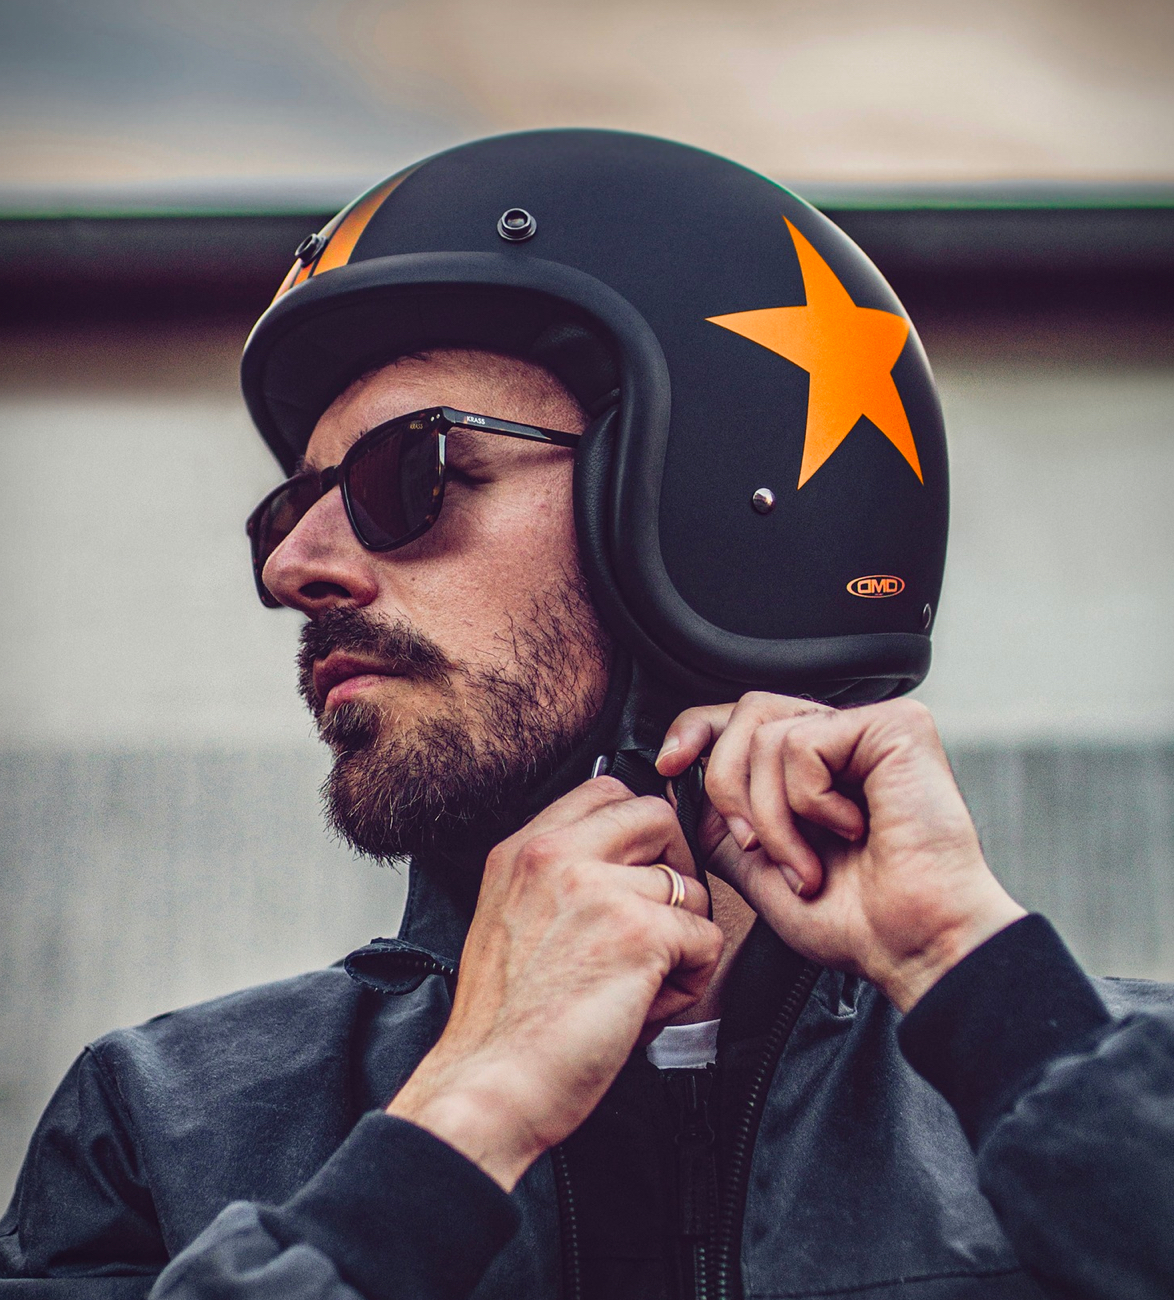 dmd-vintage-motorcycle-helmets-5.jpg | Image